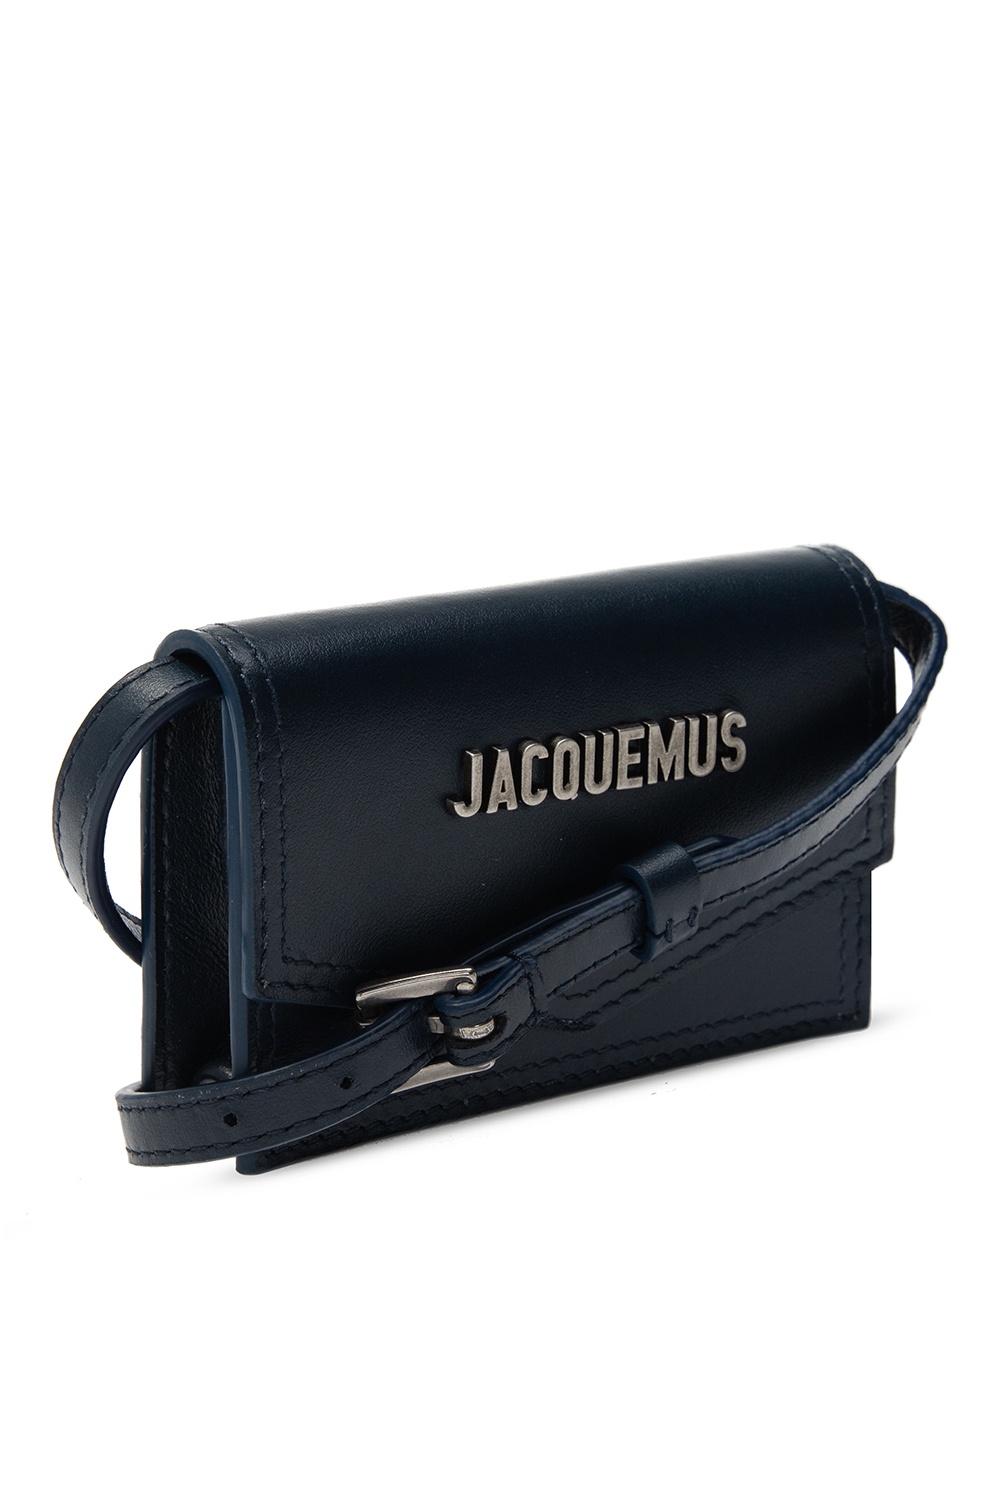 Jacquemus 'Le Porte Azur' shoulder bag | Women's Bags | IetpShops